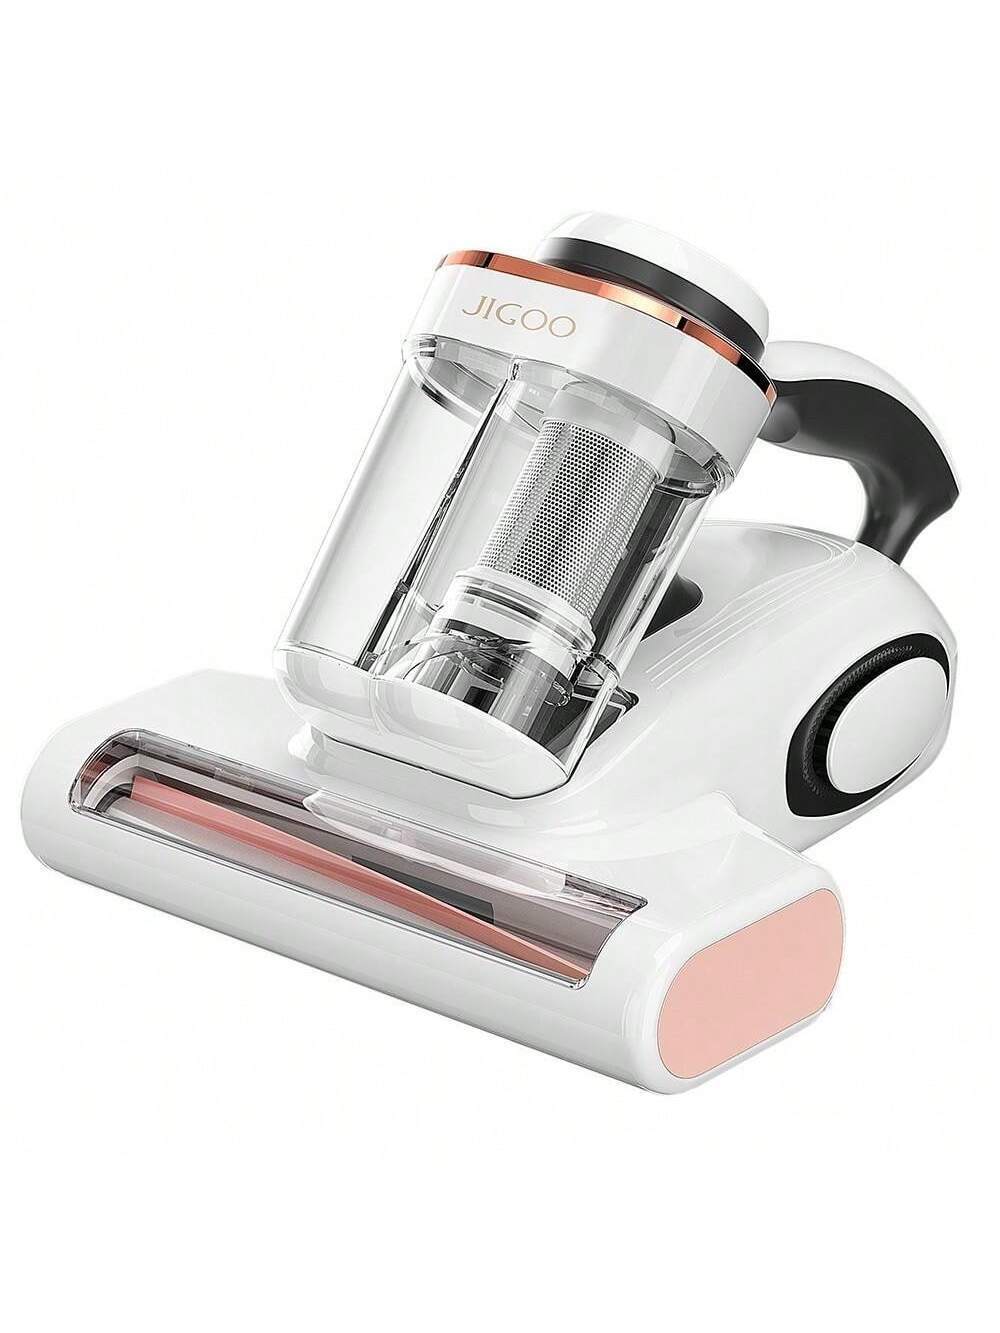 Mattress Vacuum Cleaner With Dust Sensor, Anti-Allergen Bed Vacuum Cleaner